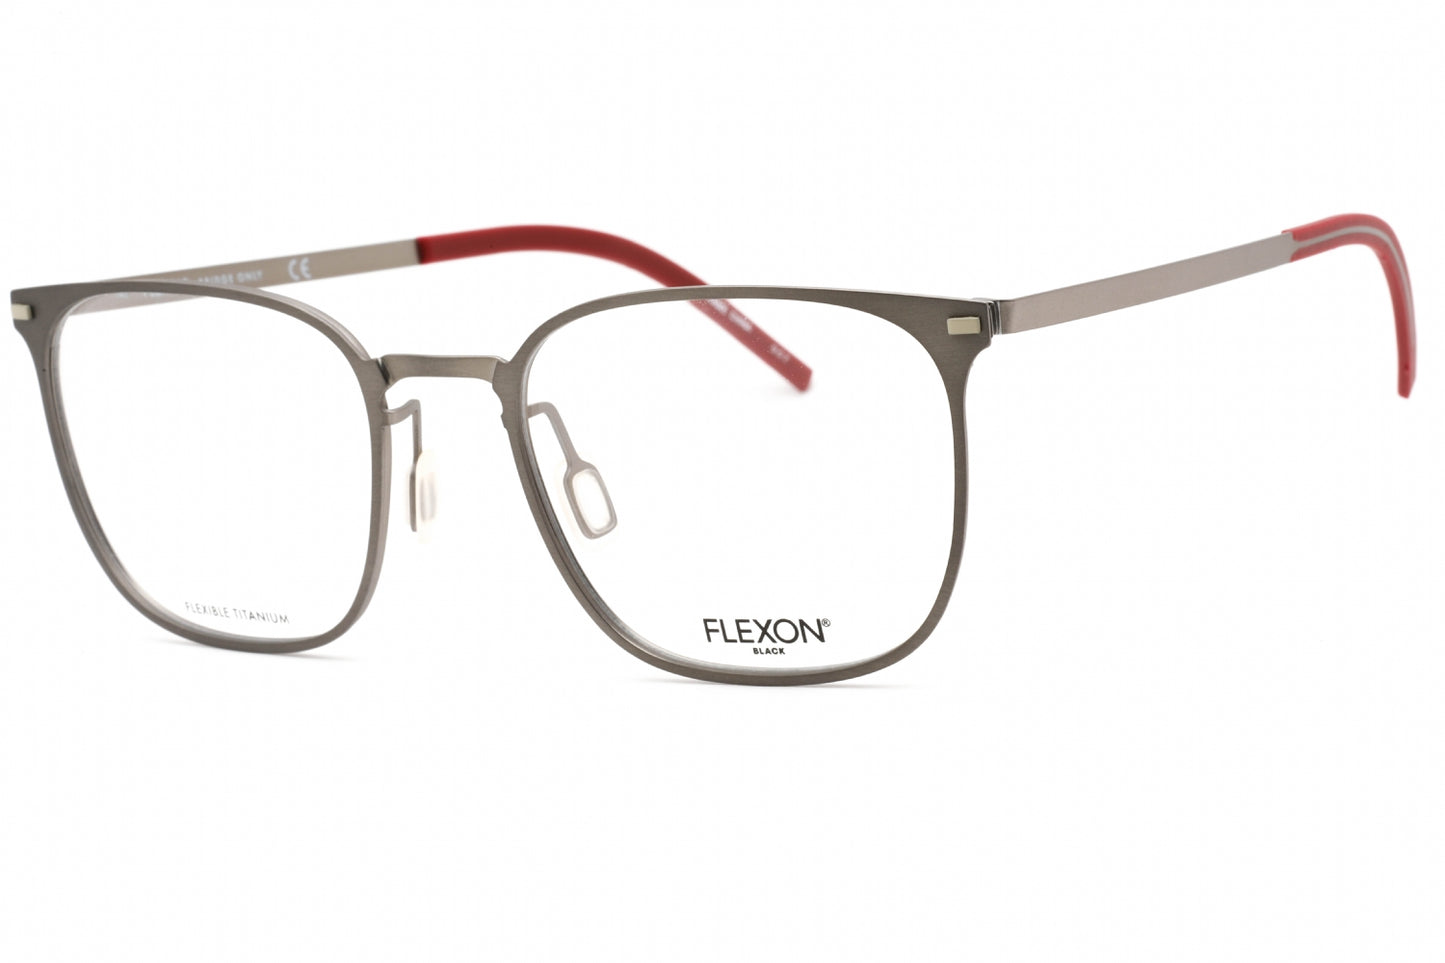 Flexon FLEXON B2029-033 53mm New Eyeglasses